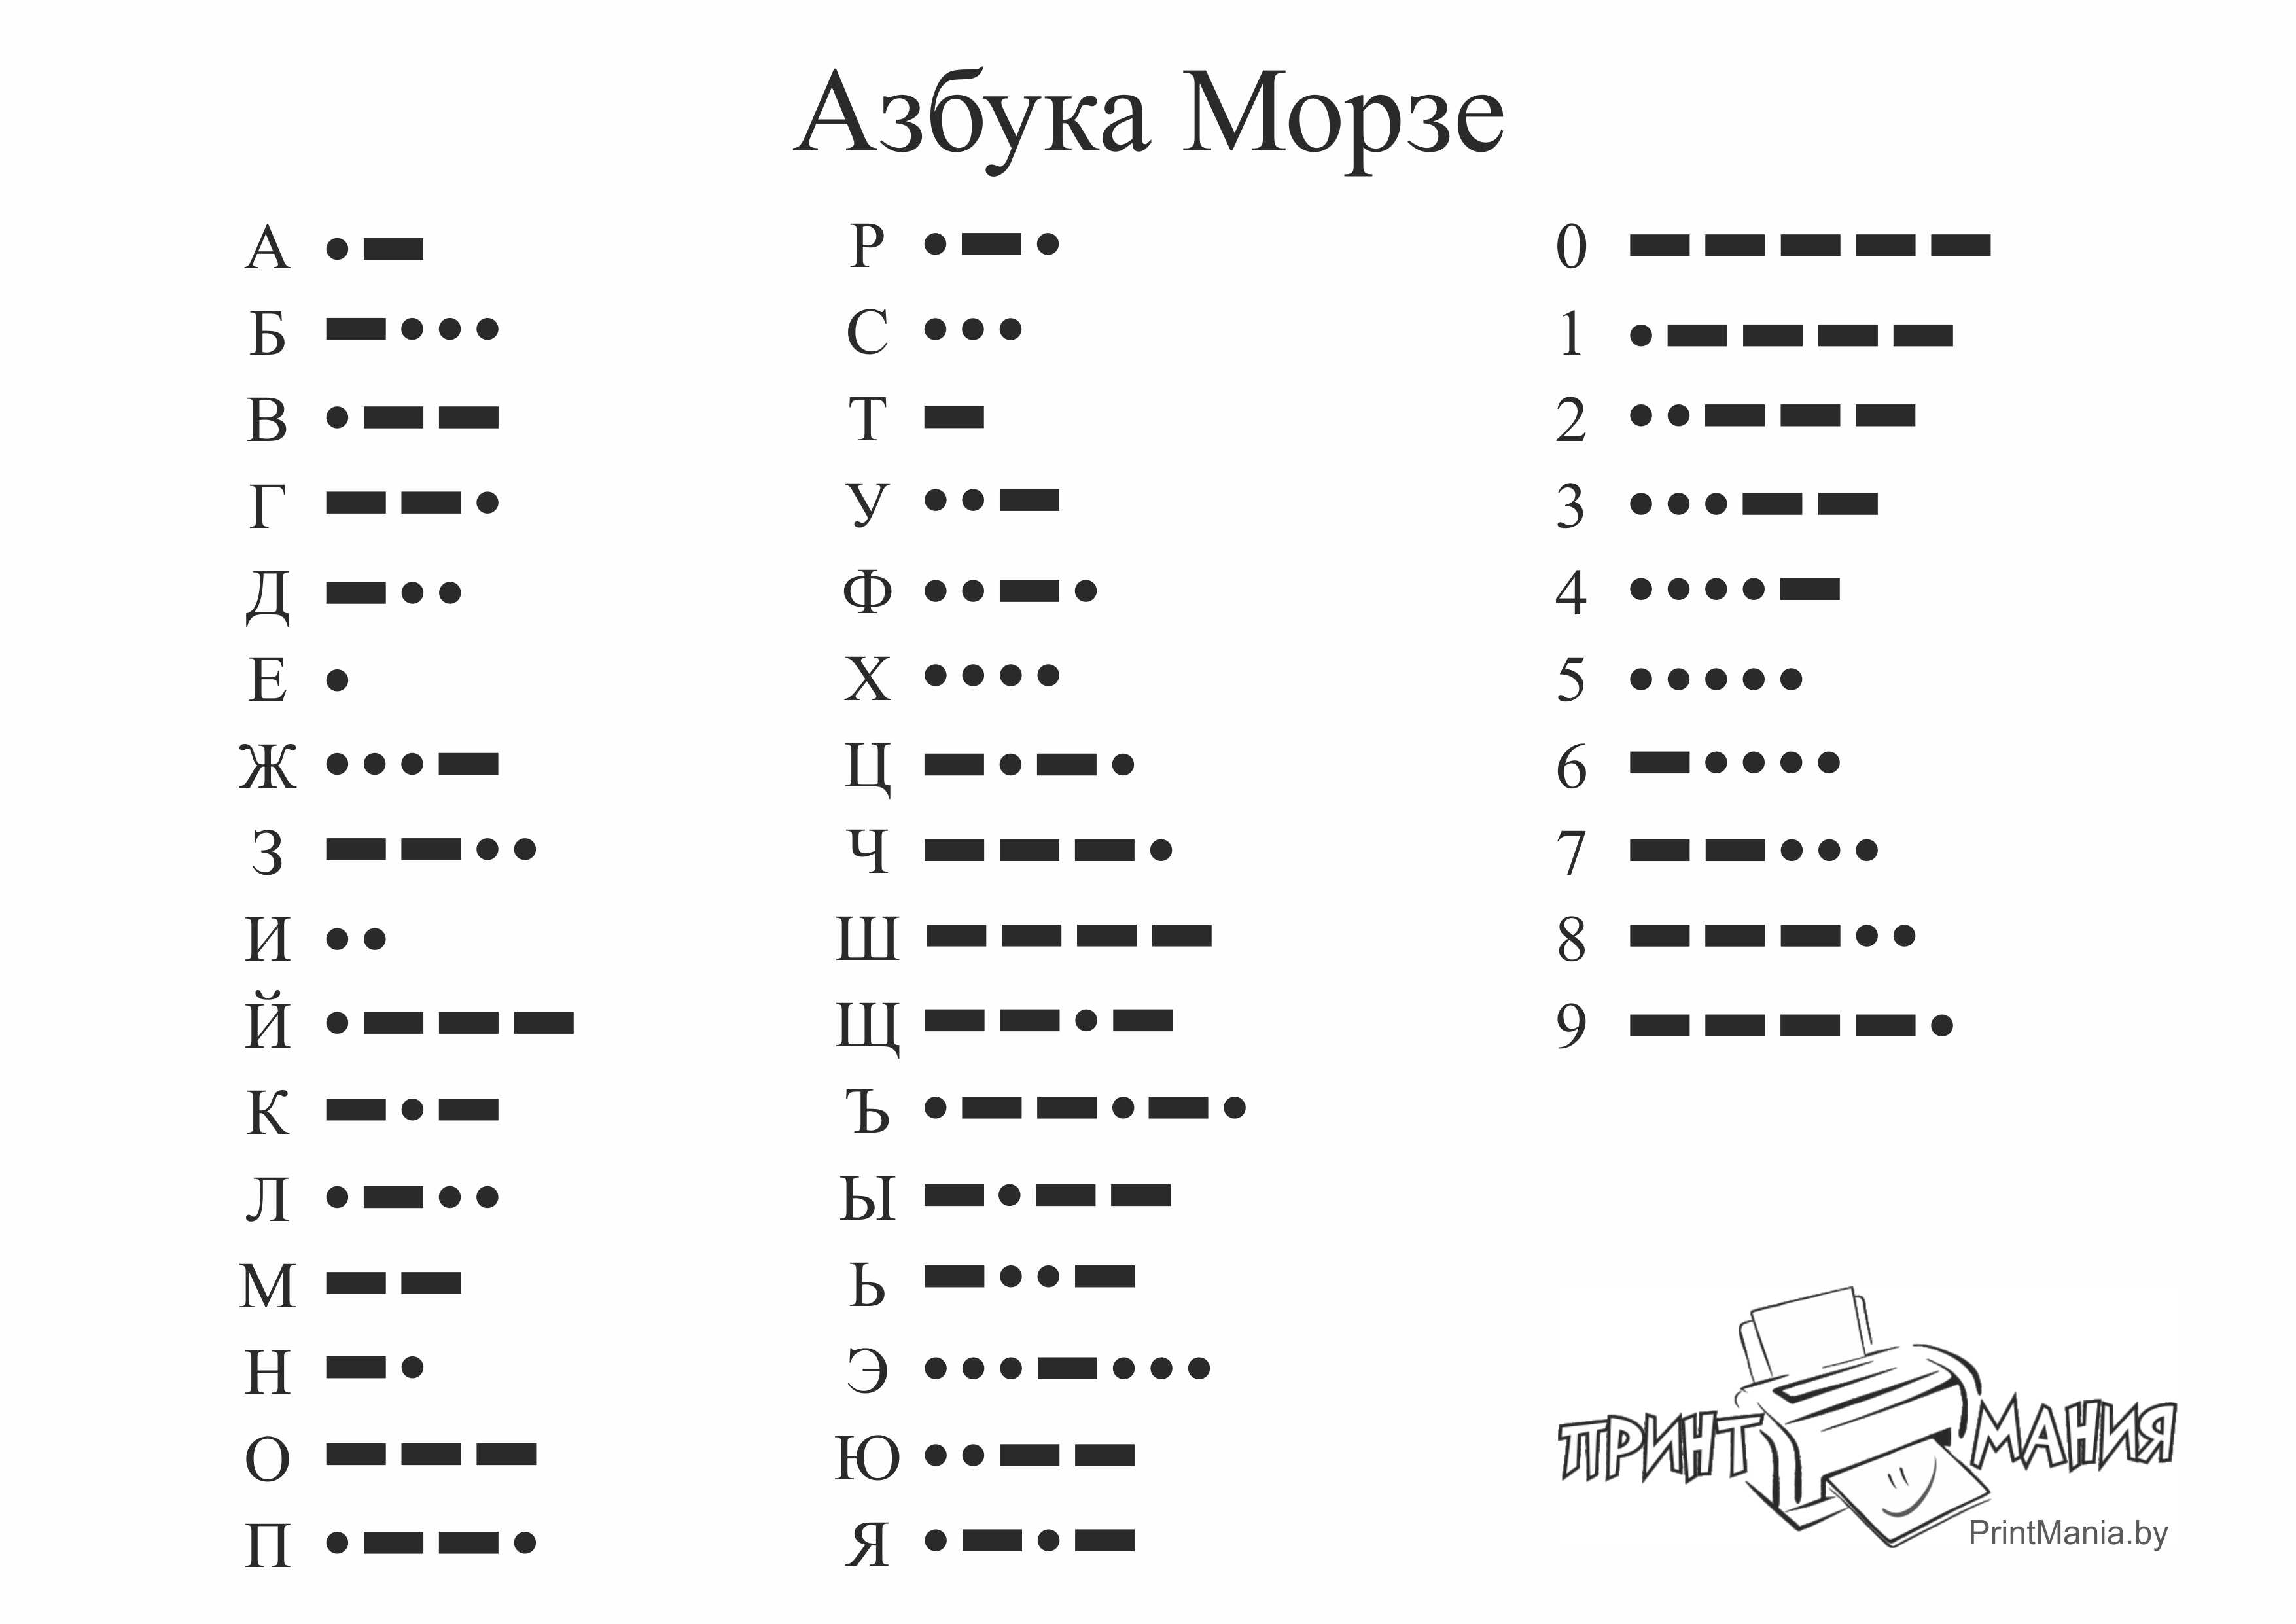 Азбука морзе быстро. Кодовая таблица азбуки Морзе. Расшифровка азбуки Морзе цифры. Азбука Морзе алфавит на русском языке таблица буквы и цифры. Таблица азбуки Морзе с русскими.